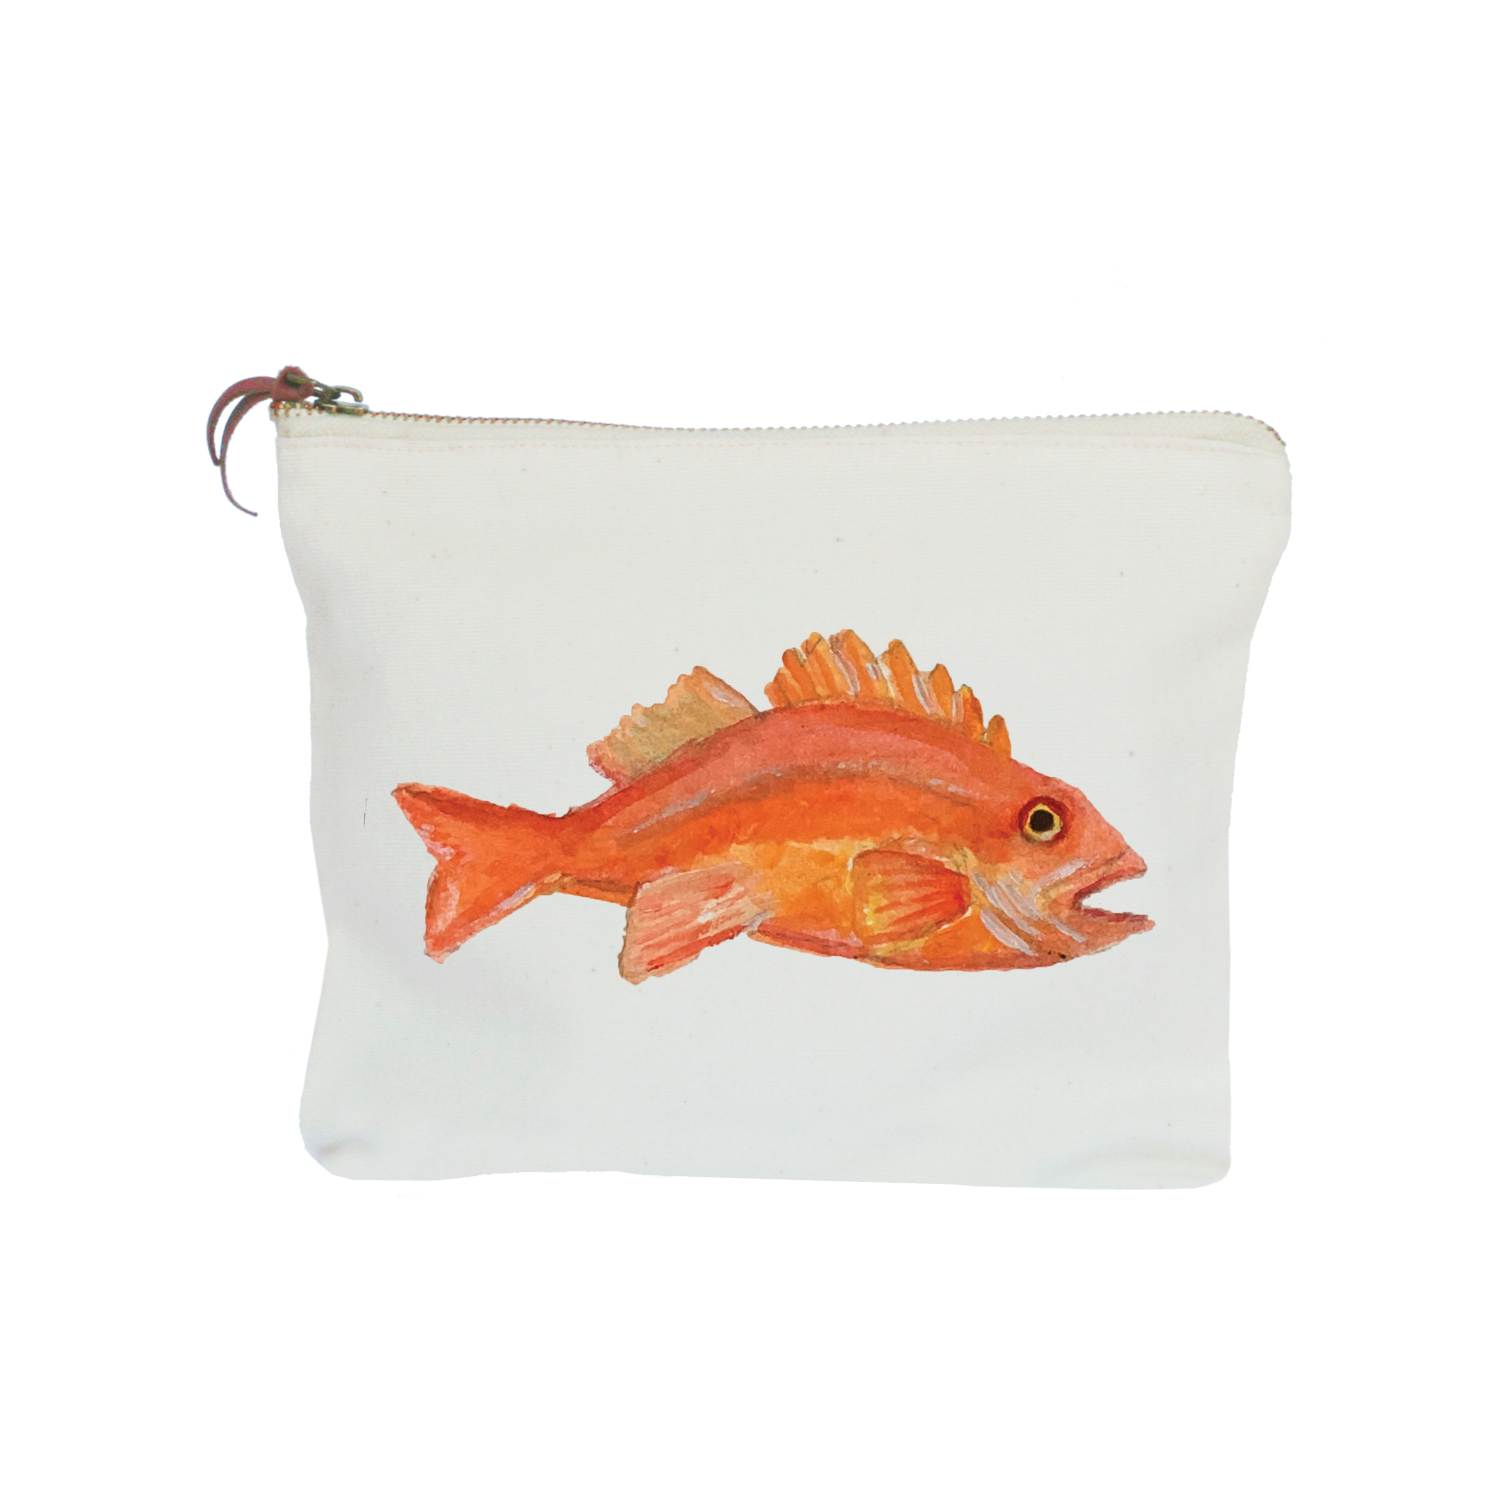 rockfish zipper pouch